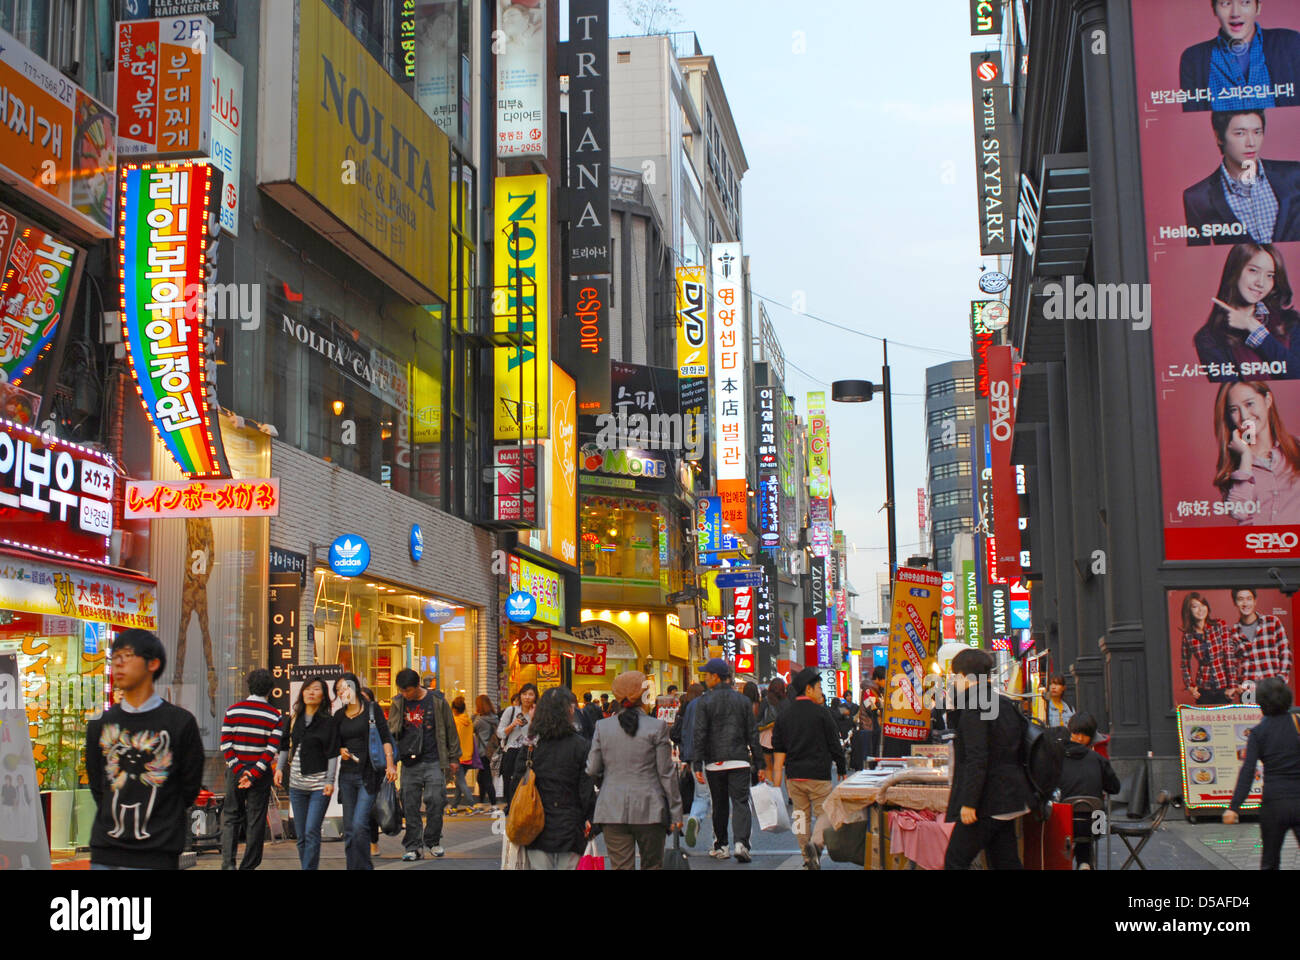 La vie nocturne et de shopping parmi les rues de Gangnam, Seoul, Corée du Sud Banque D'Images